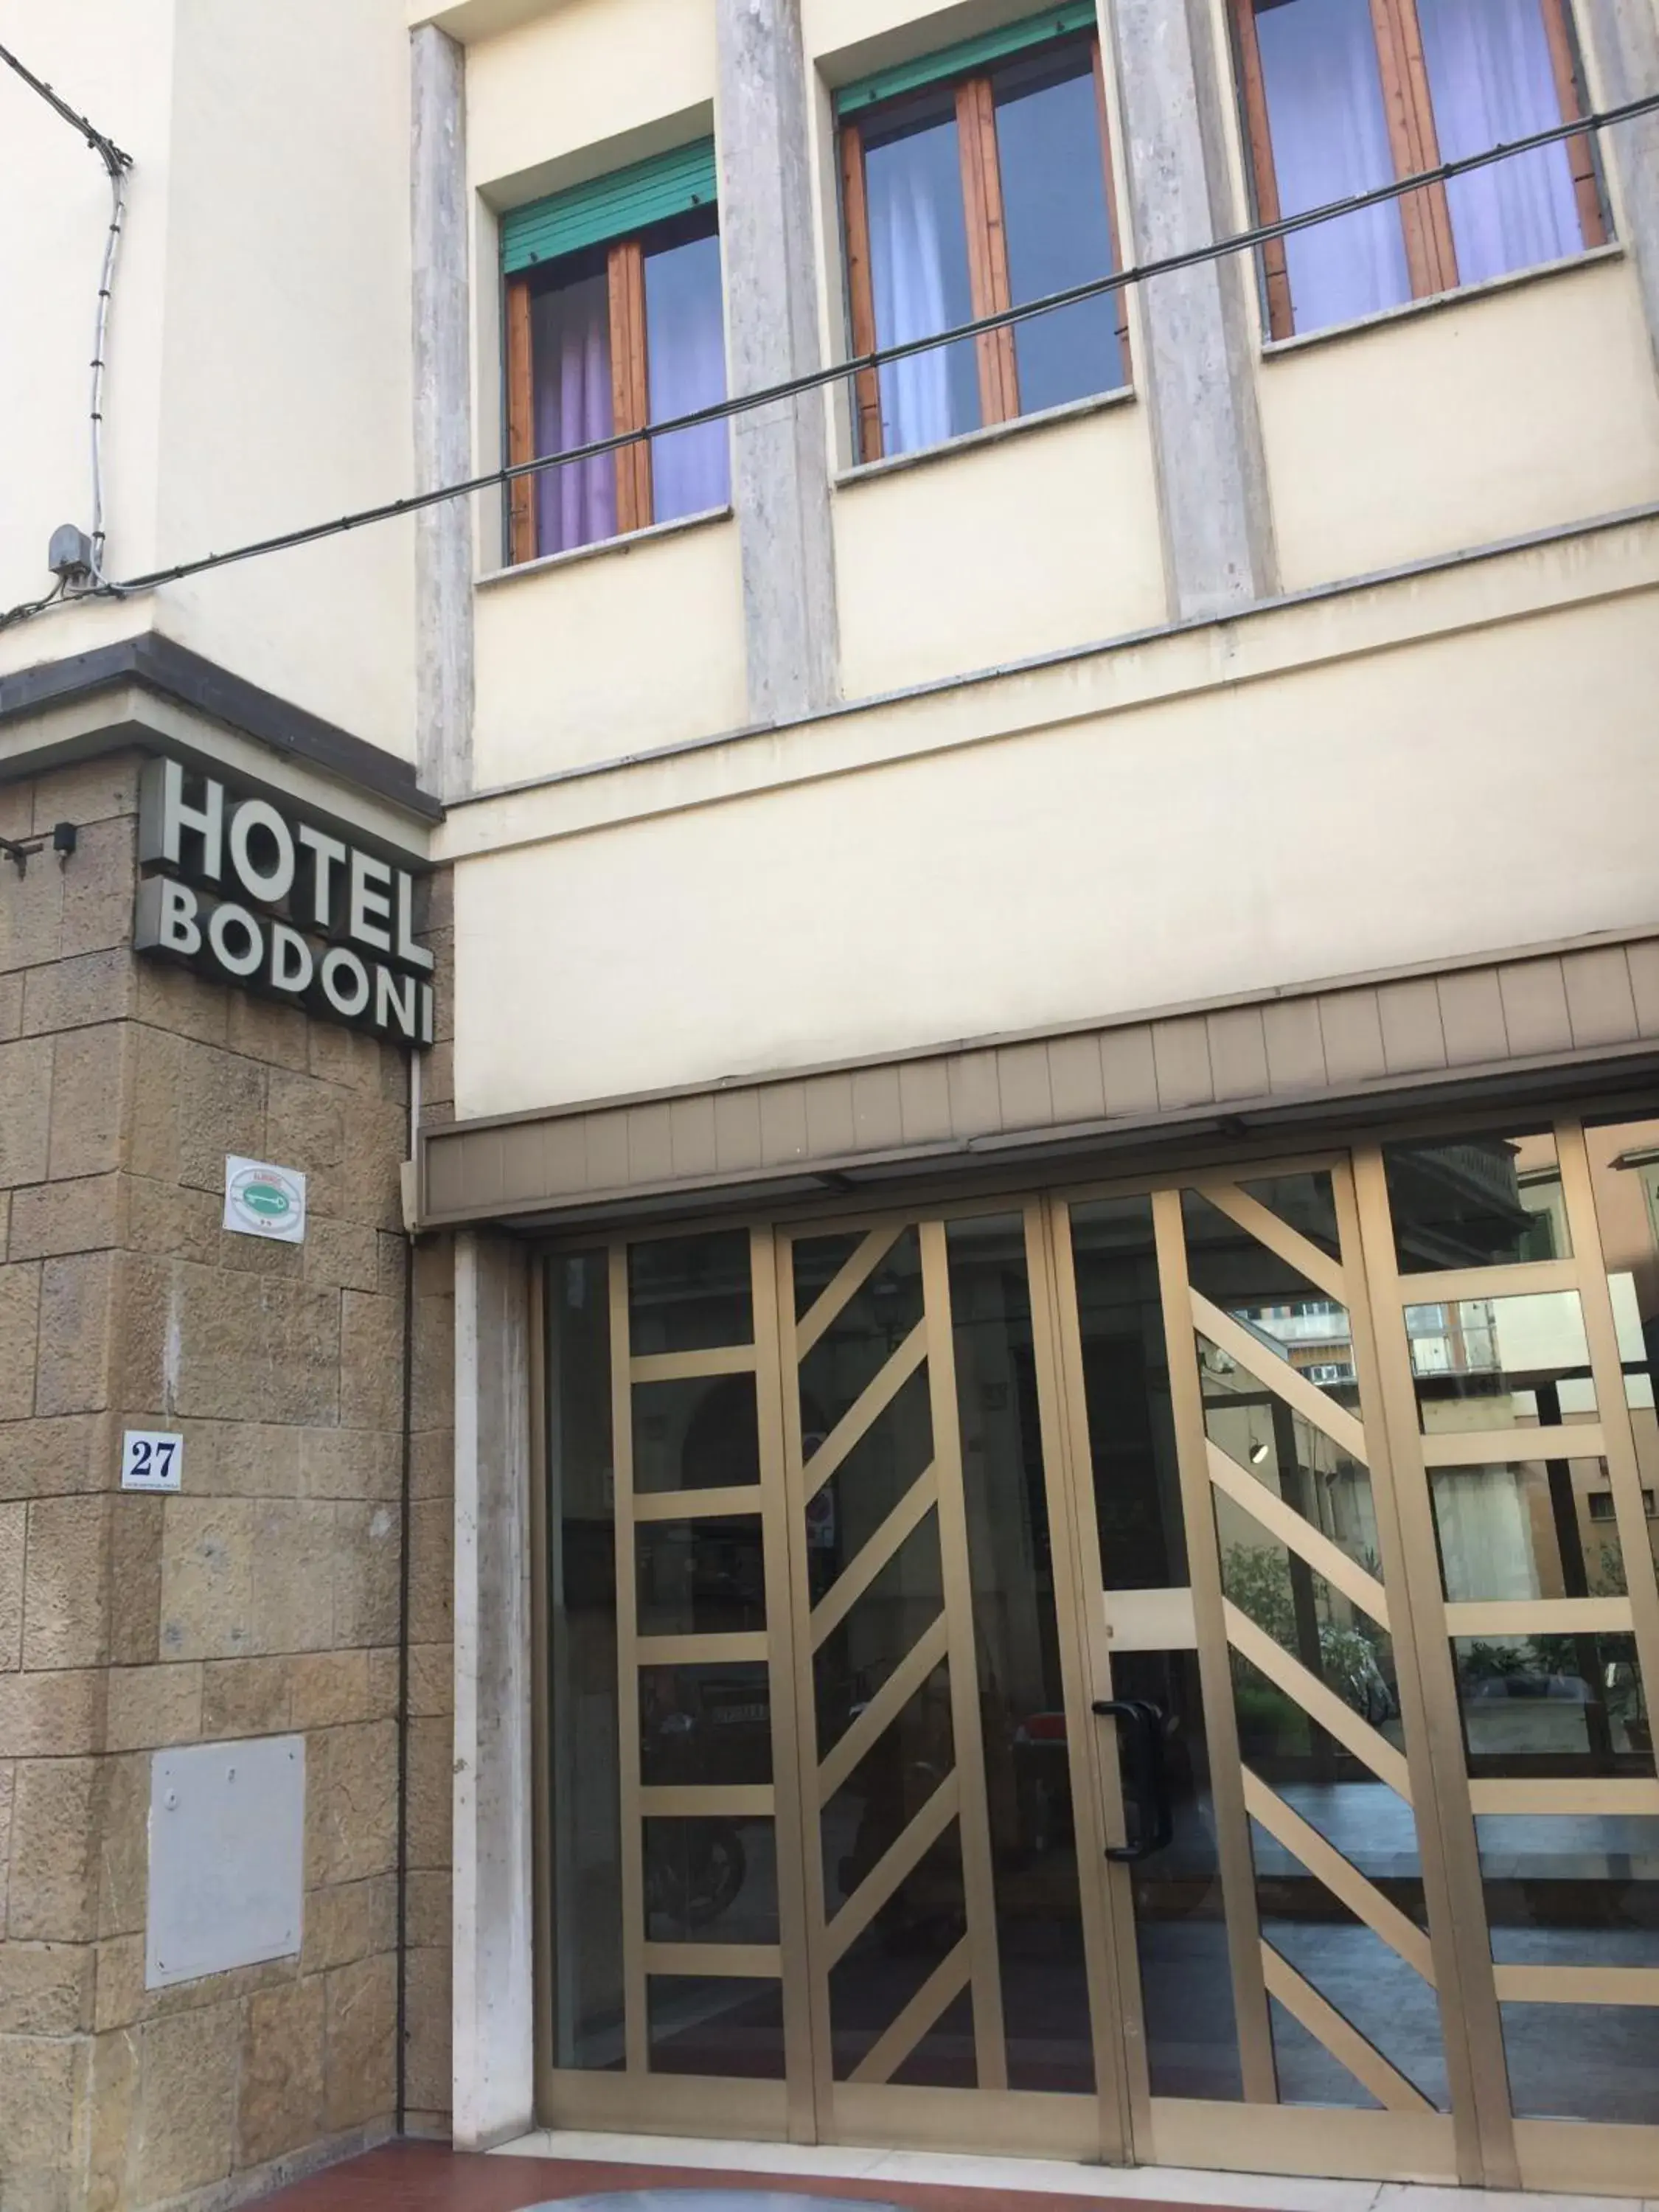 Property building in Hotel Bodoni